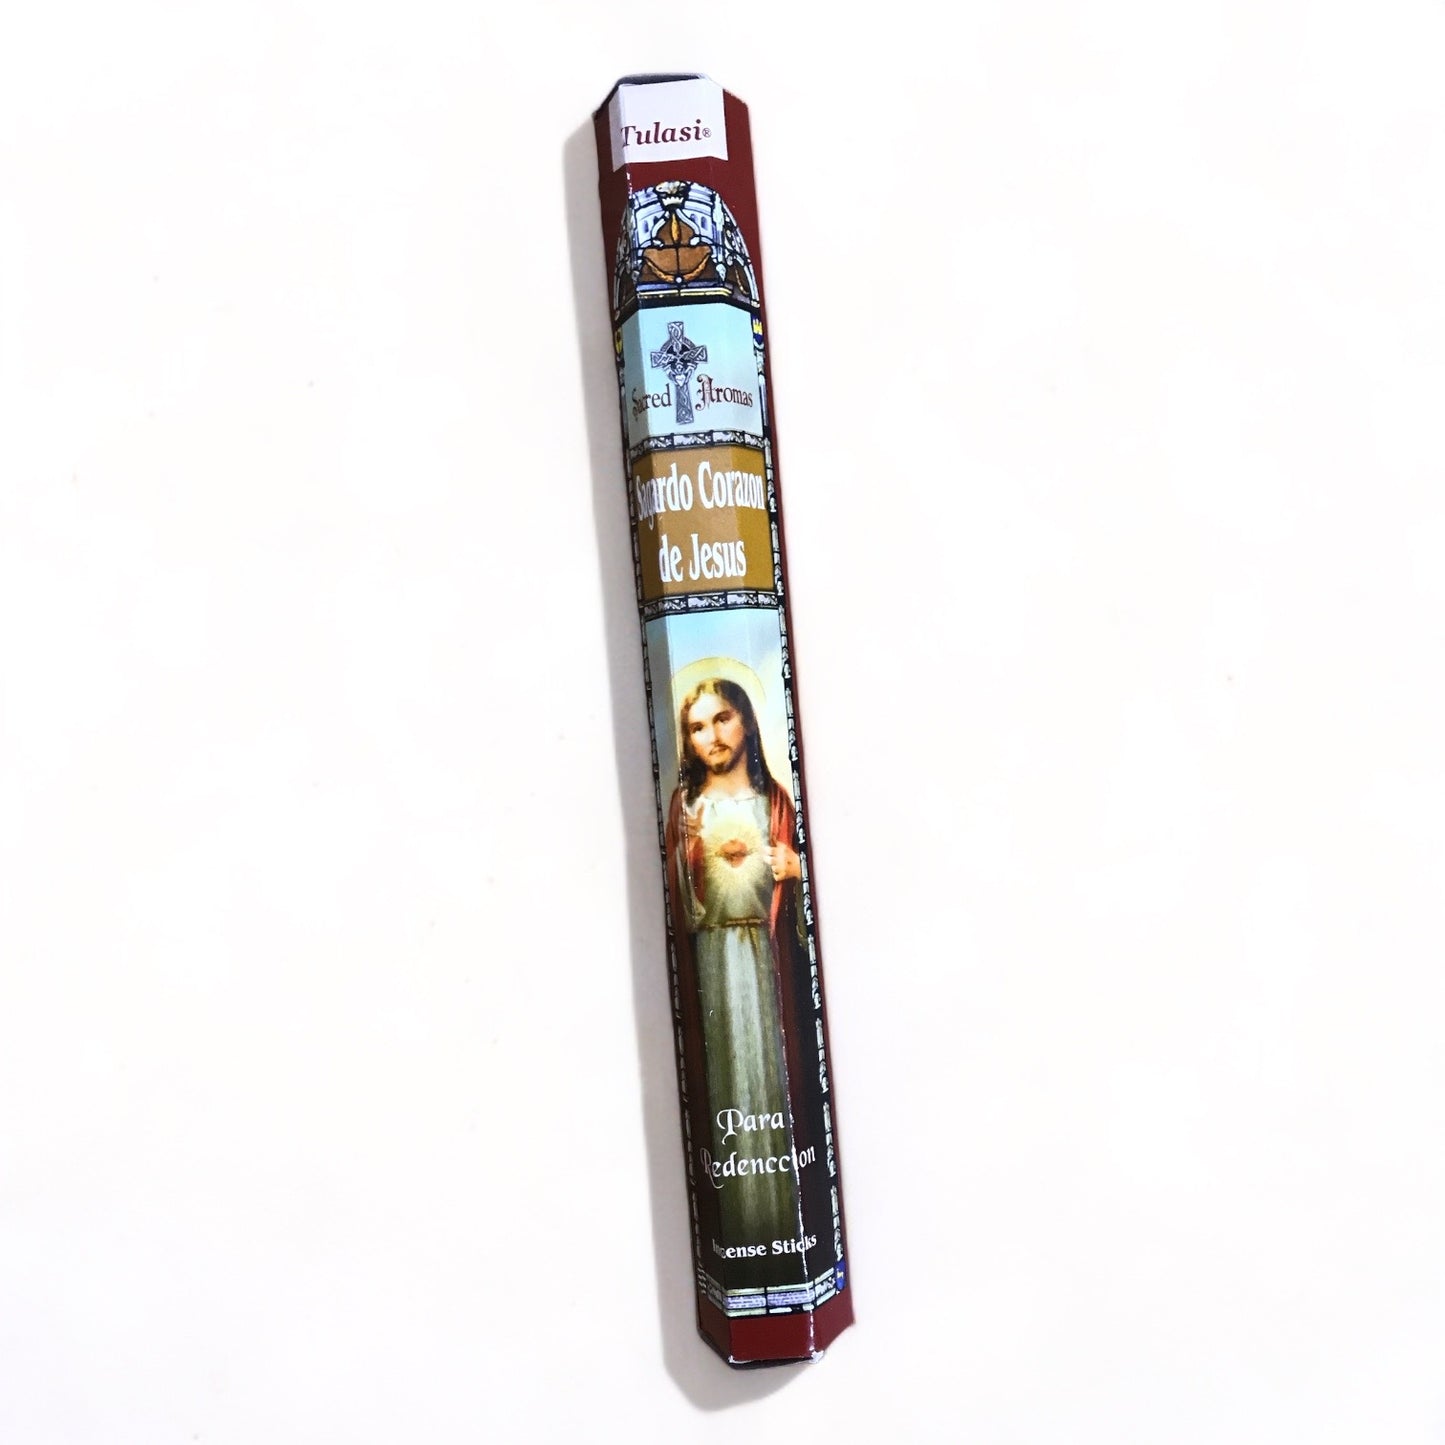 Sagardo Corazon de Jesus Incense Sticks - Tulasi - 15g